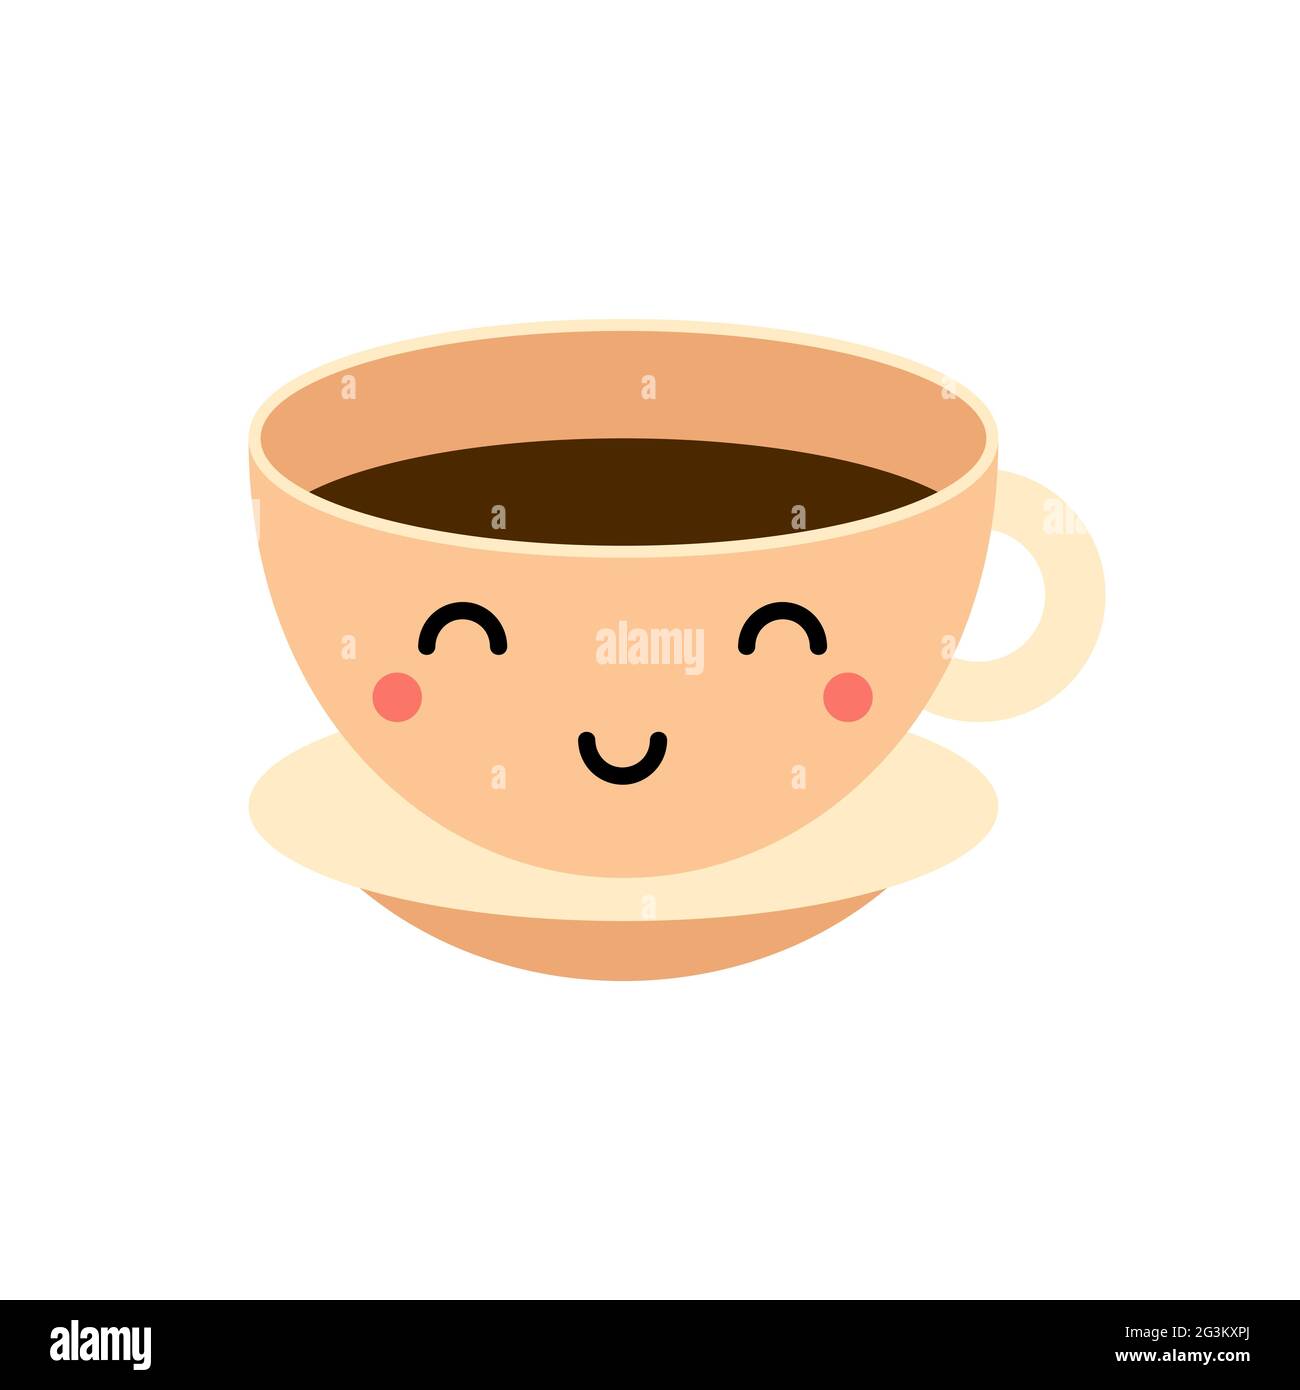 Café kawaii, illustration d'une tasse à thé. Cute tasse avec boisson chaude  isolée sur fond blanc. Personnage drôle avec les yeux, la bouche. Une  mascotte souriante et amicale Image Vectorielle Stock -